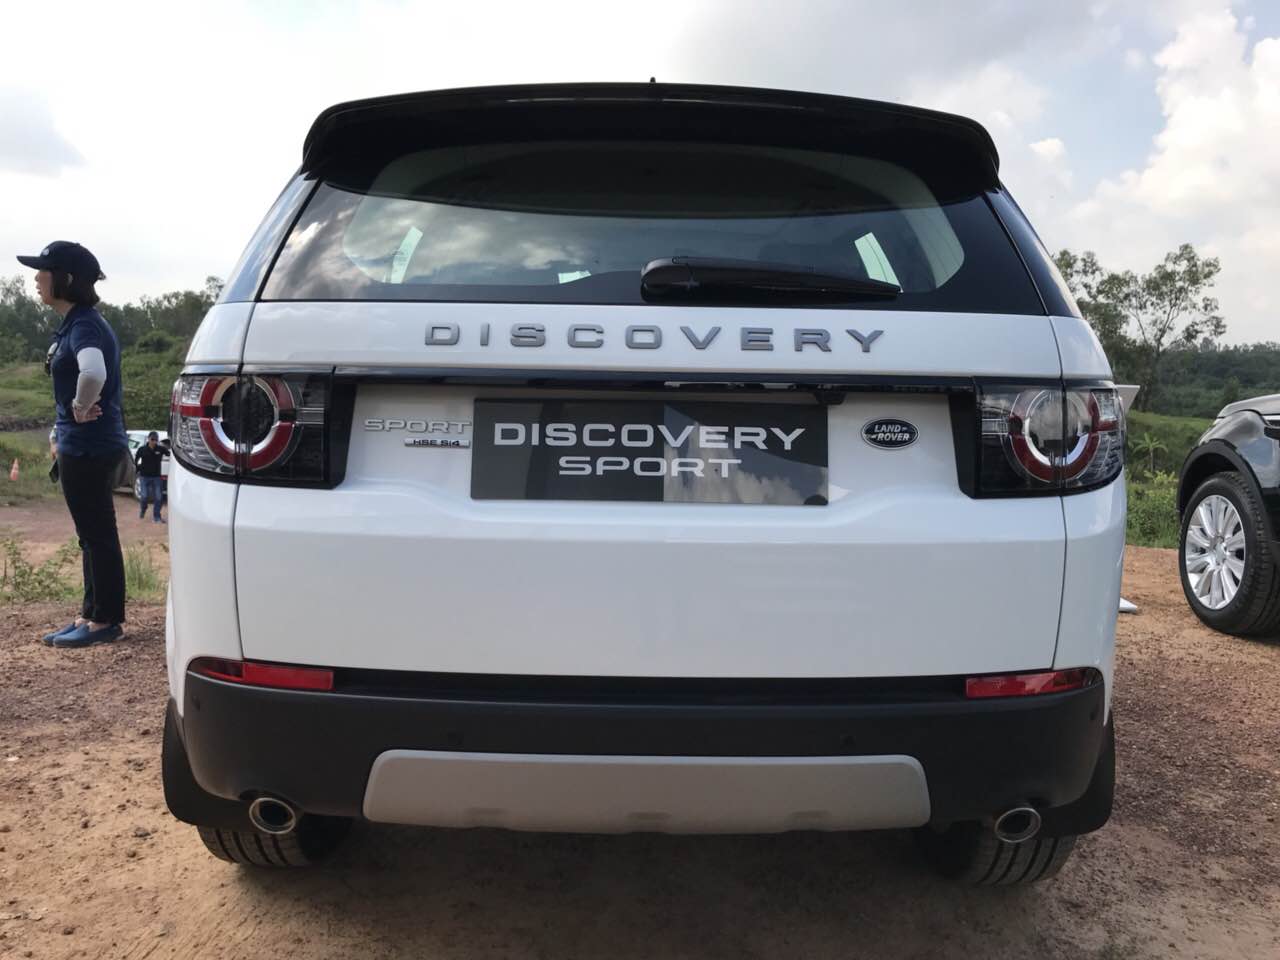 Giá Xe 5 Chỗ Land Rover Discovery SPort Màu Trắng 7 chỗ đời mới nhất 2019 Bao Nhiêu Tại Việt Nam, mẫu xe 2.0 máy xăng phiên bản tiêu chuẩn se, hse, hse luxury khác gì nhau